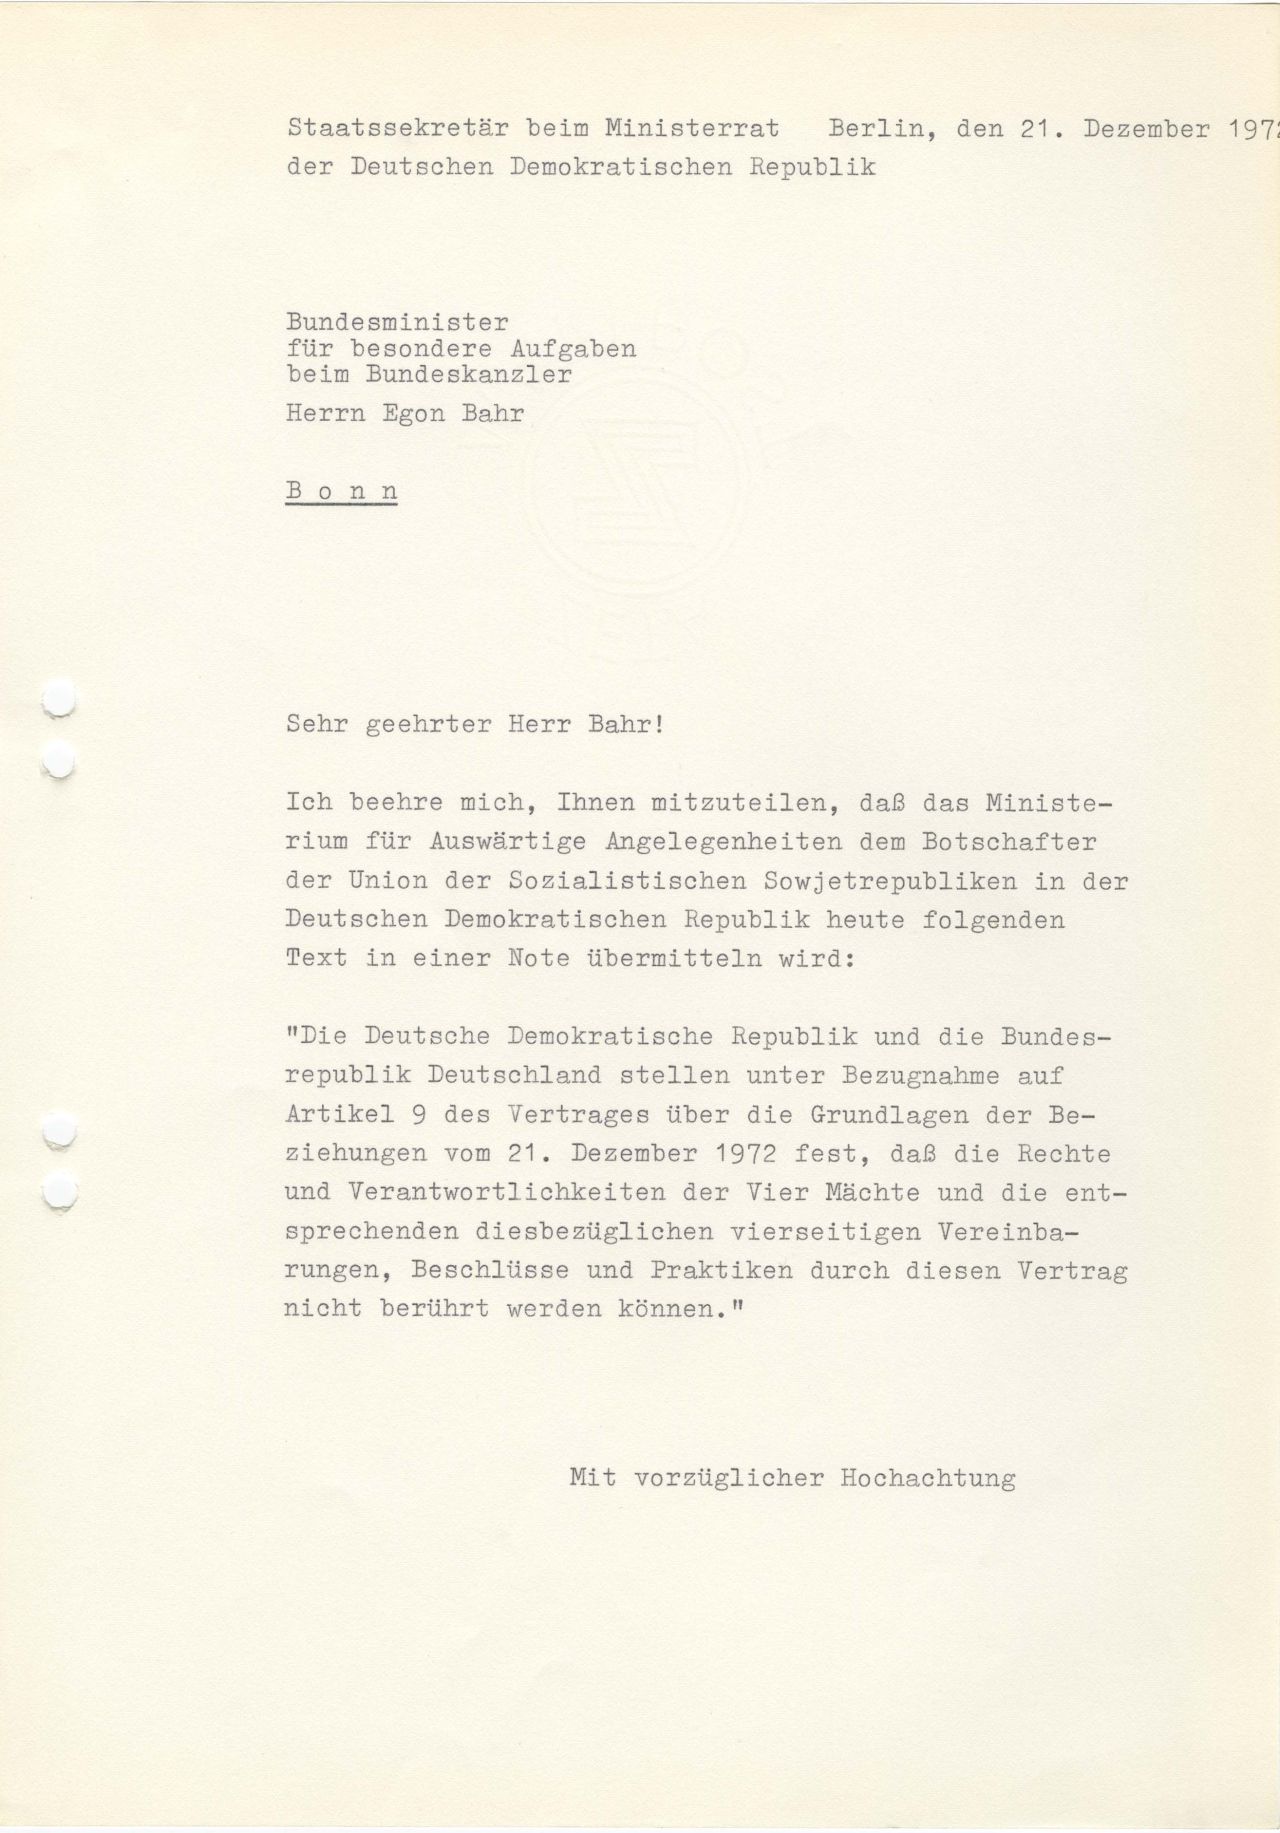 Einseitiges Dokument von Michael Kohl an Egon Bahr bezüglich des Grundlagenvertrages und dessen Auswirkungen.